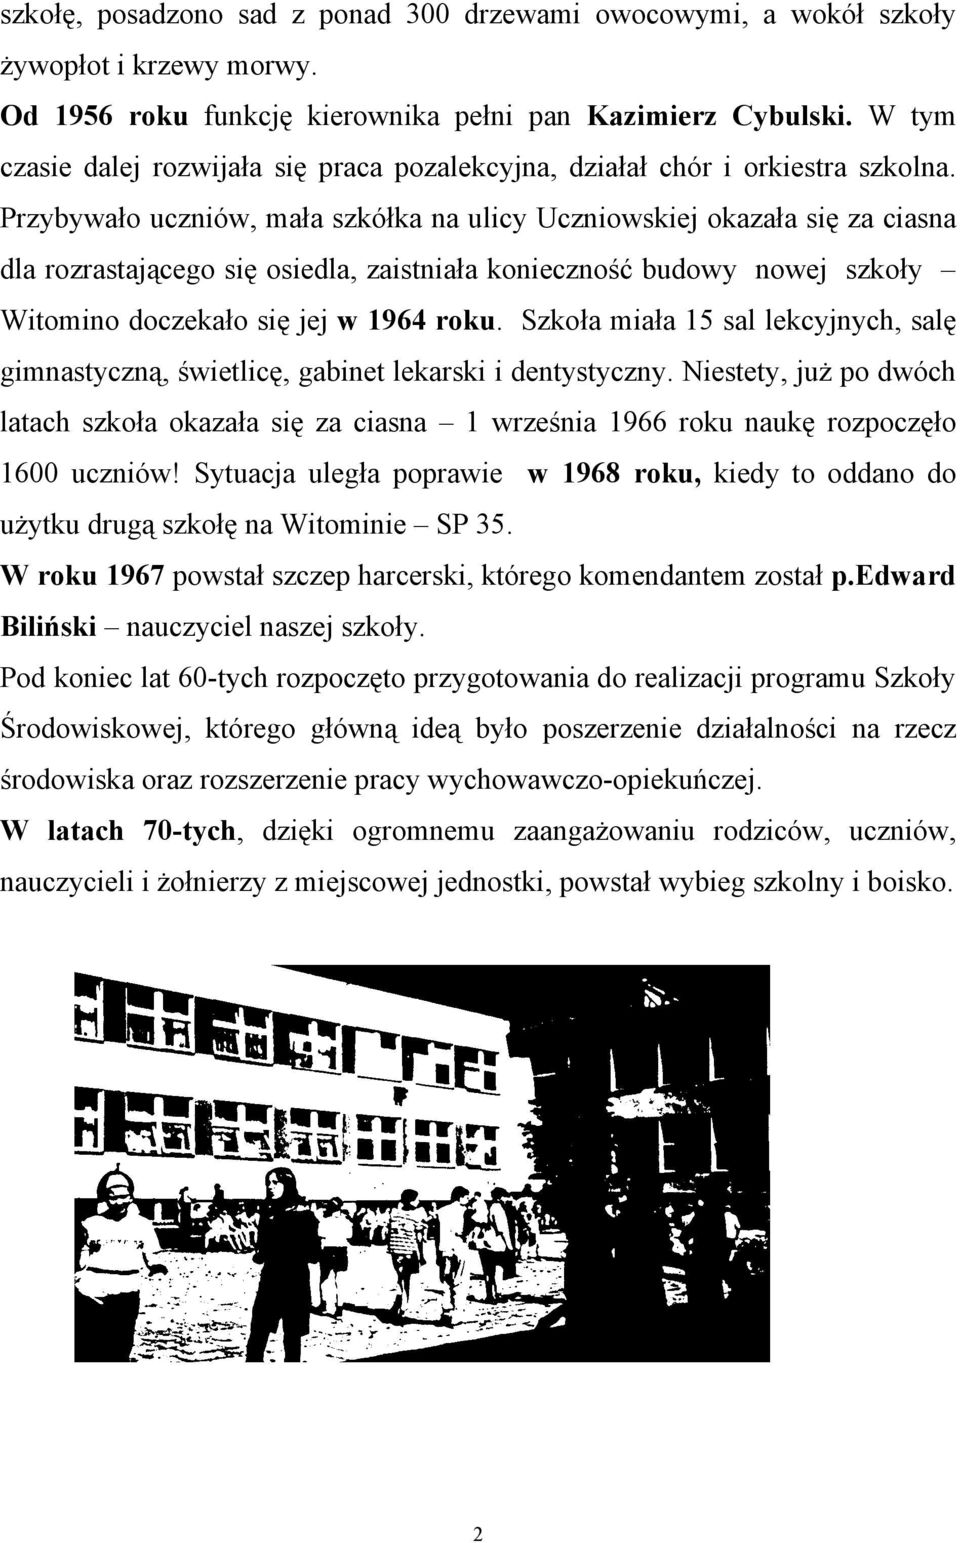 Przybywało uczniów, mała szkółka na ulicy Uczniowskiej okazała się za ciasna dla rozrastającego się osiedla, zaistniała konieczność budowy nowej szkoły Witomino doczekało się jej w 1964 roku.